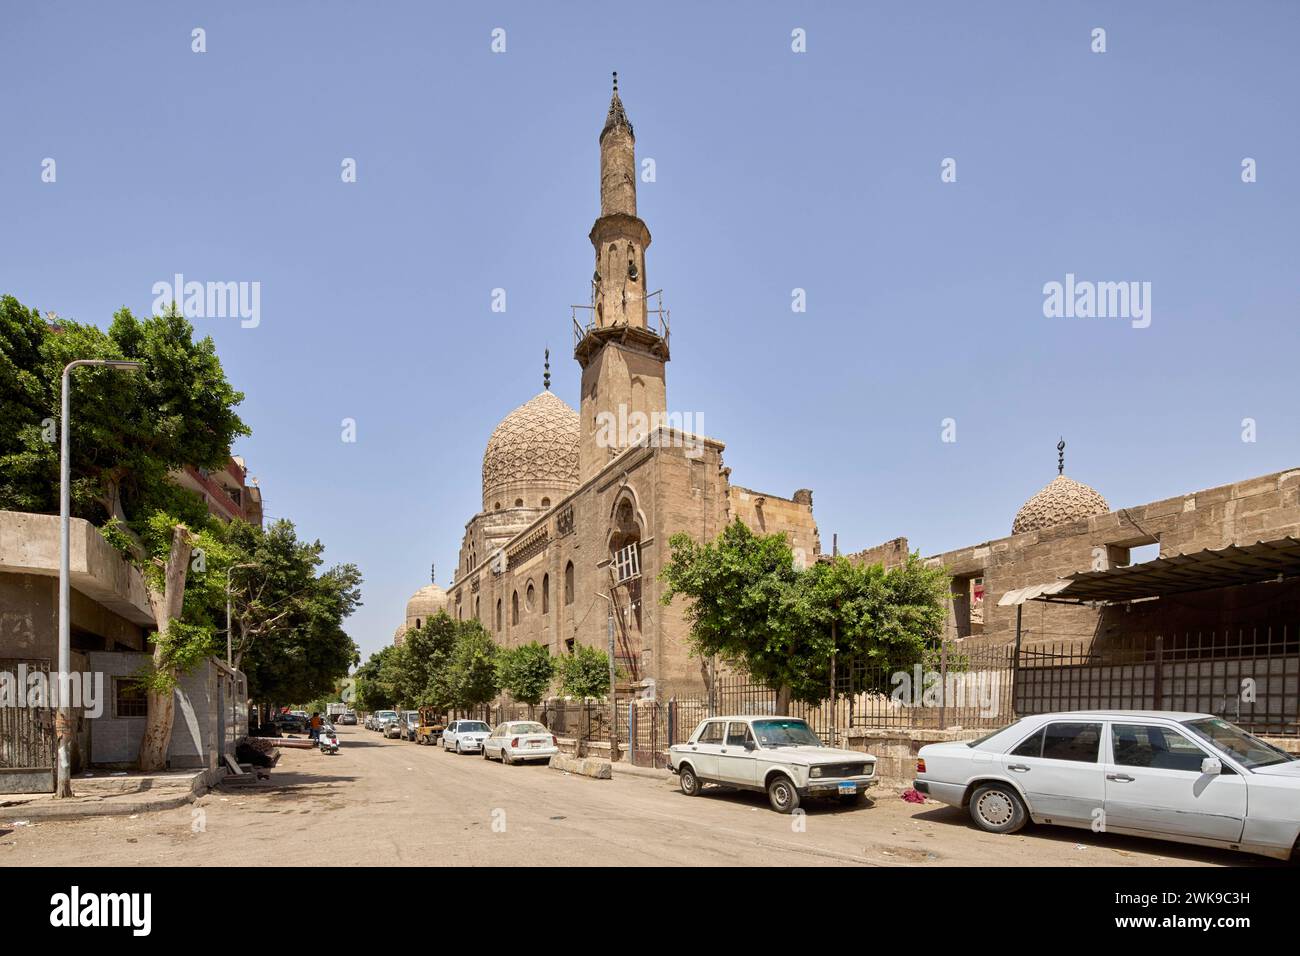 Mausolée Khanqah du sultan Barsbay dans la ville des morts, cimetière du Nord, le Caire, Égypte Banque D'Images